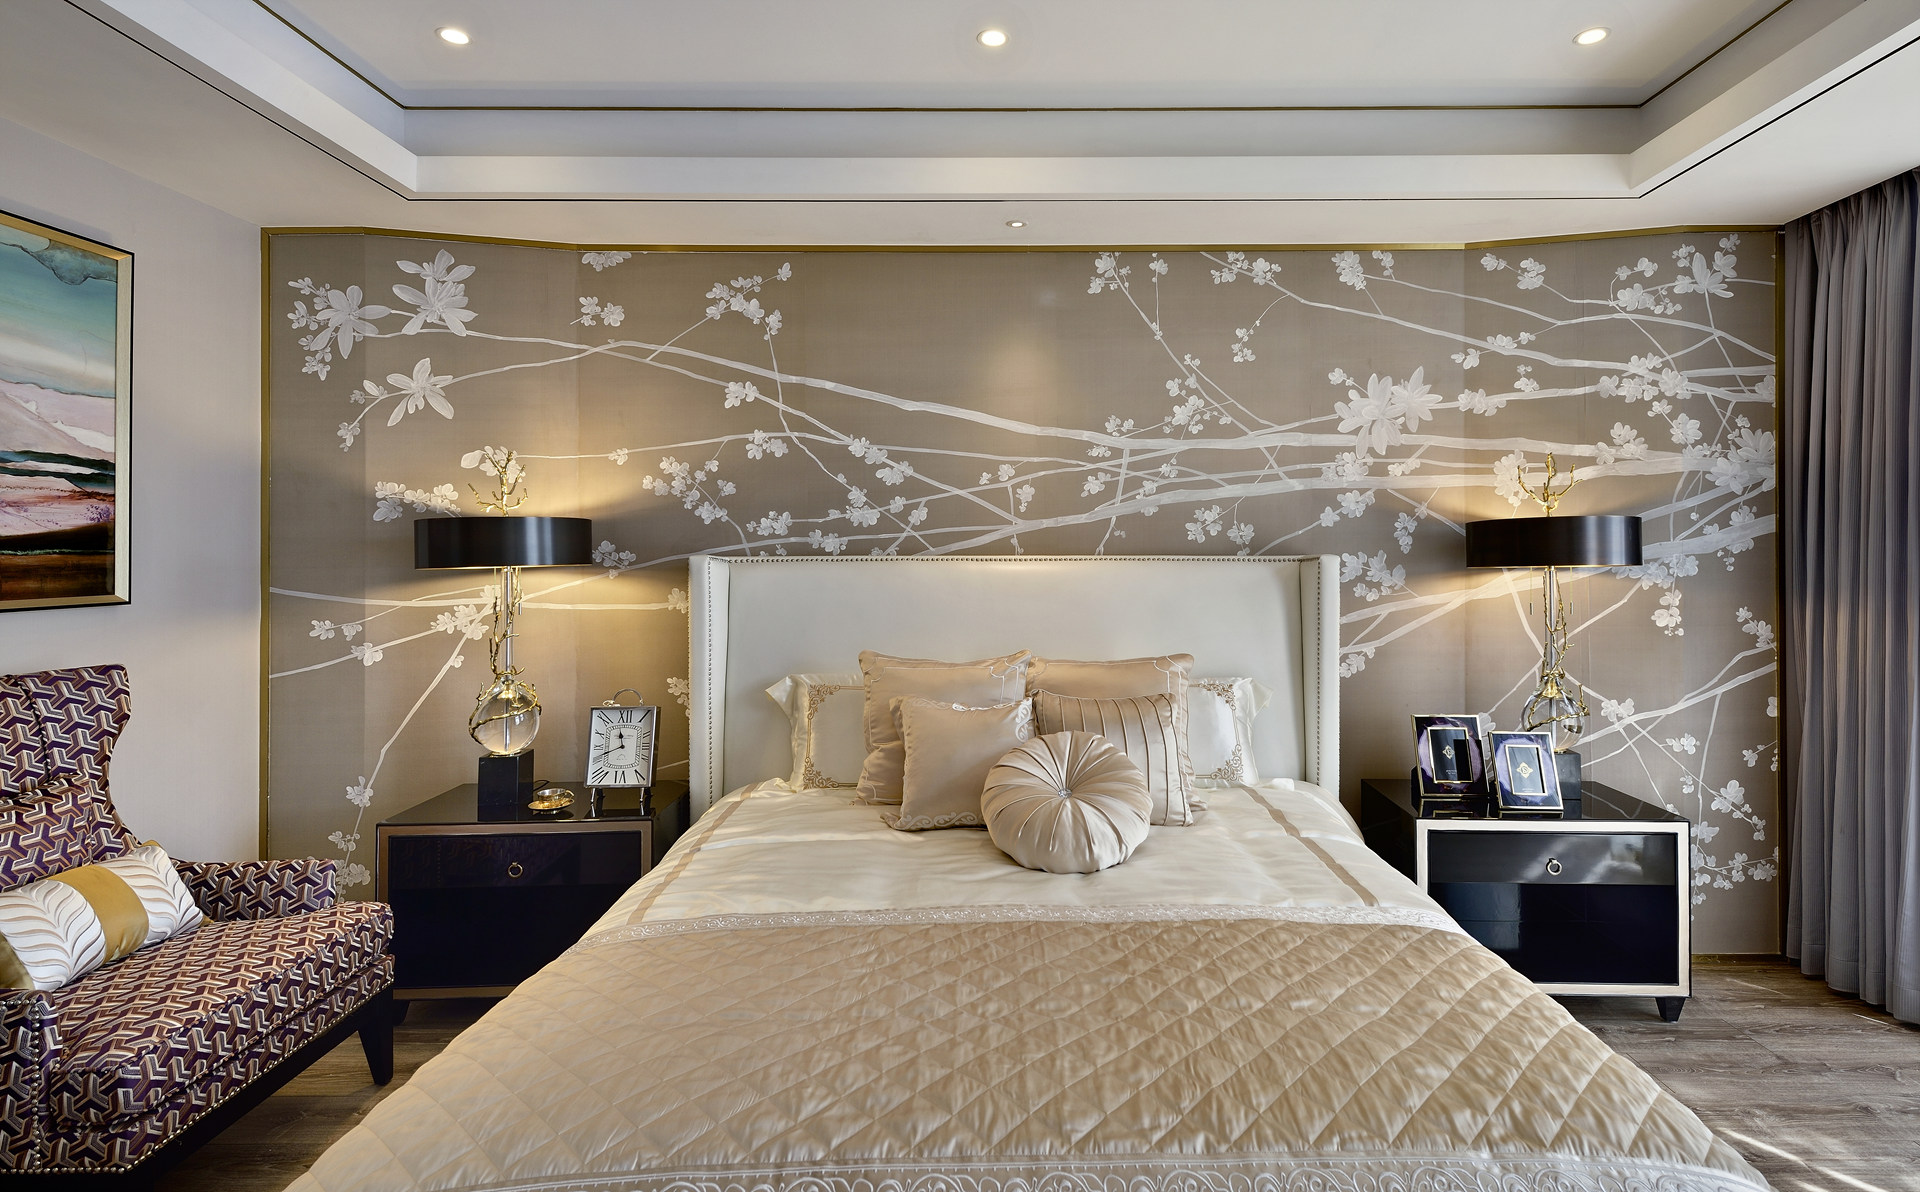 灰底白花的背景墙意境很美，让次卧空间显得非常静谧舒适，床头灯具对称方式，增加了层次感。